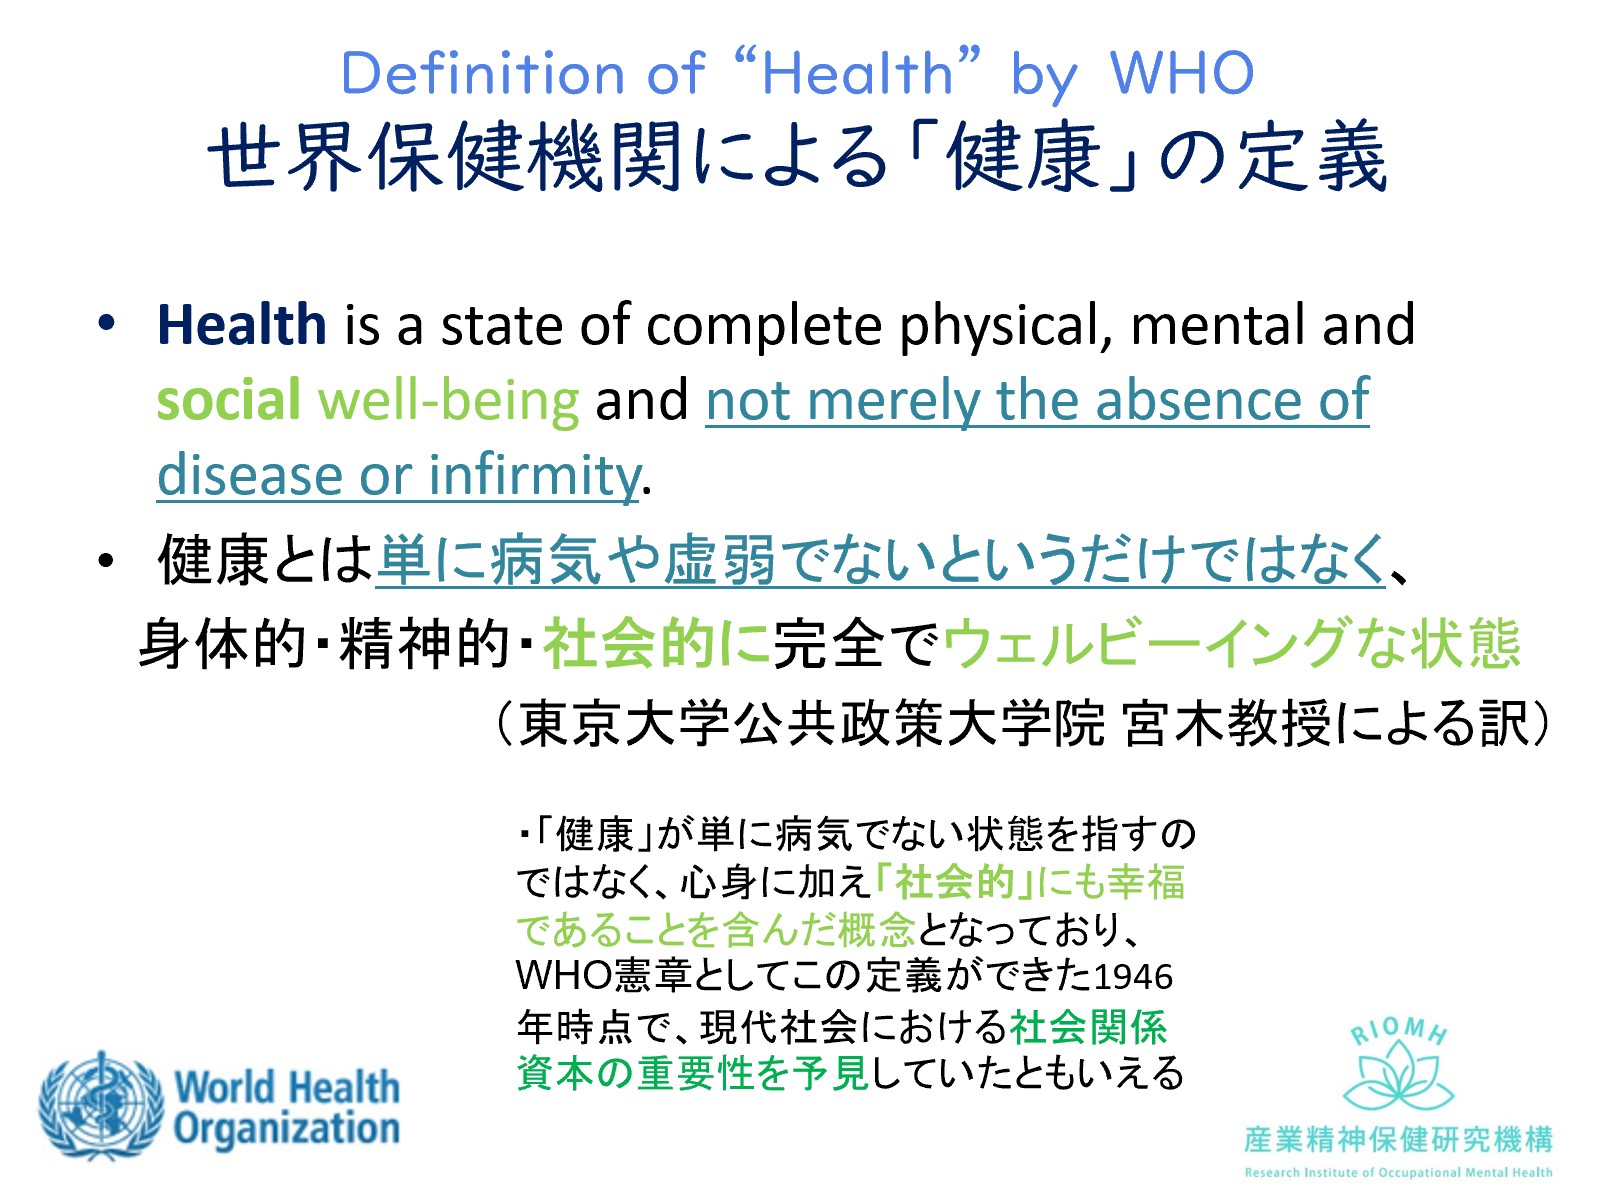 社会的な意味づけが当初からなされていたWHOによる健康の定義